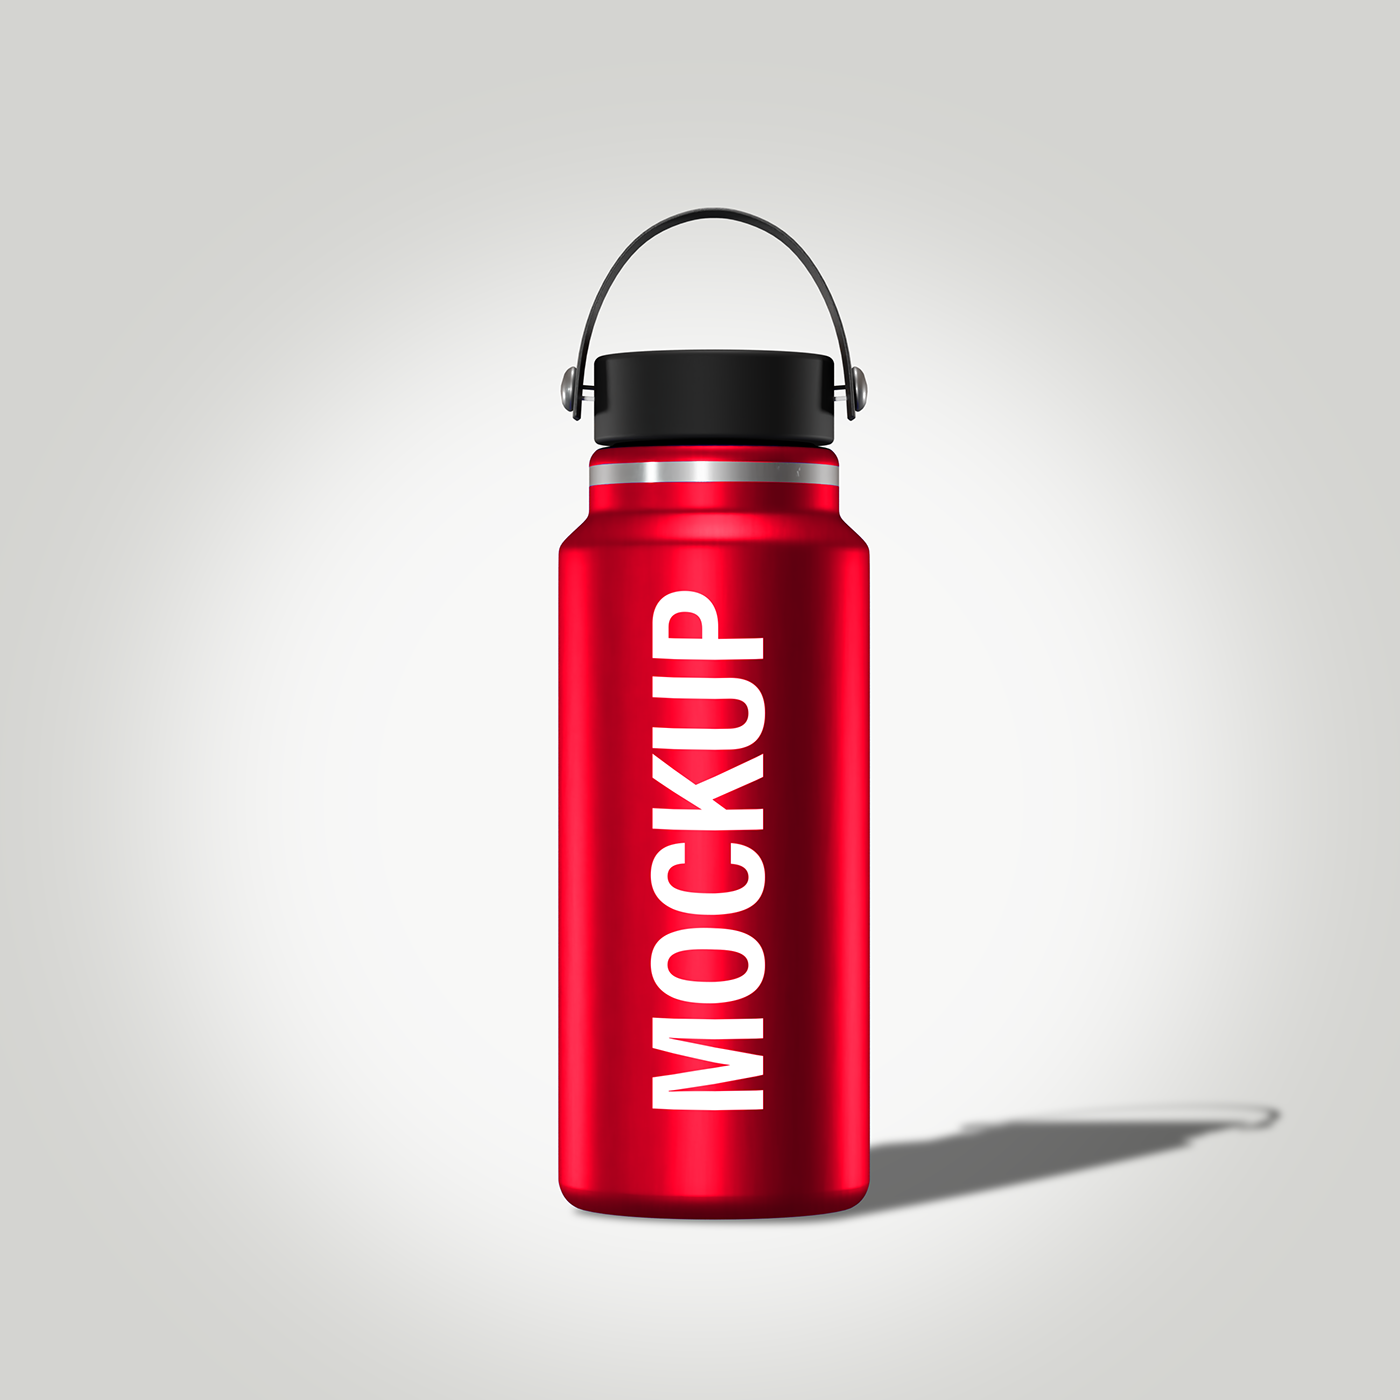 water Mockup flask psd free mock up photoshop Graphic Designer design